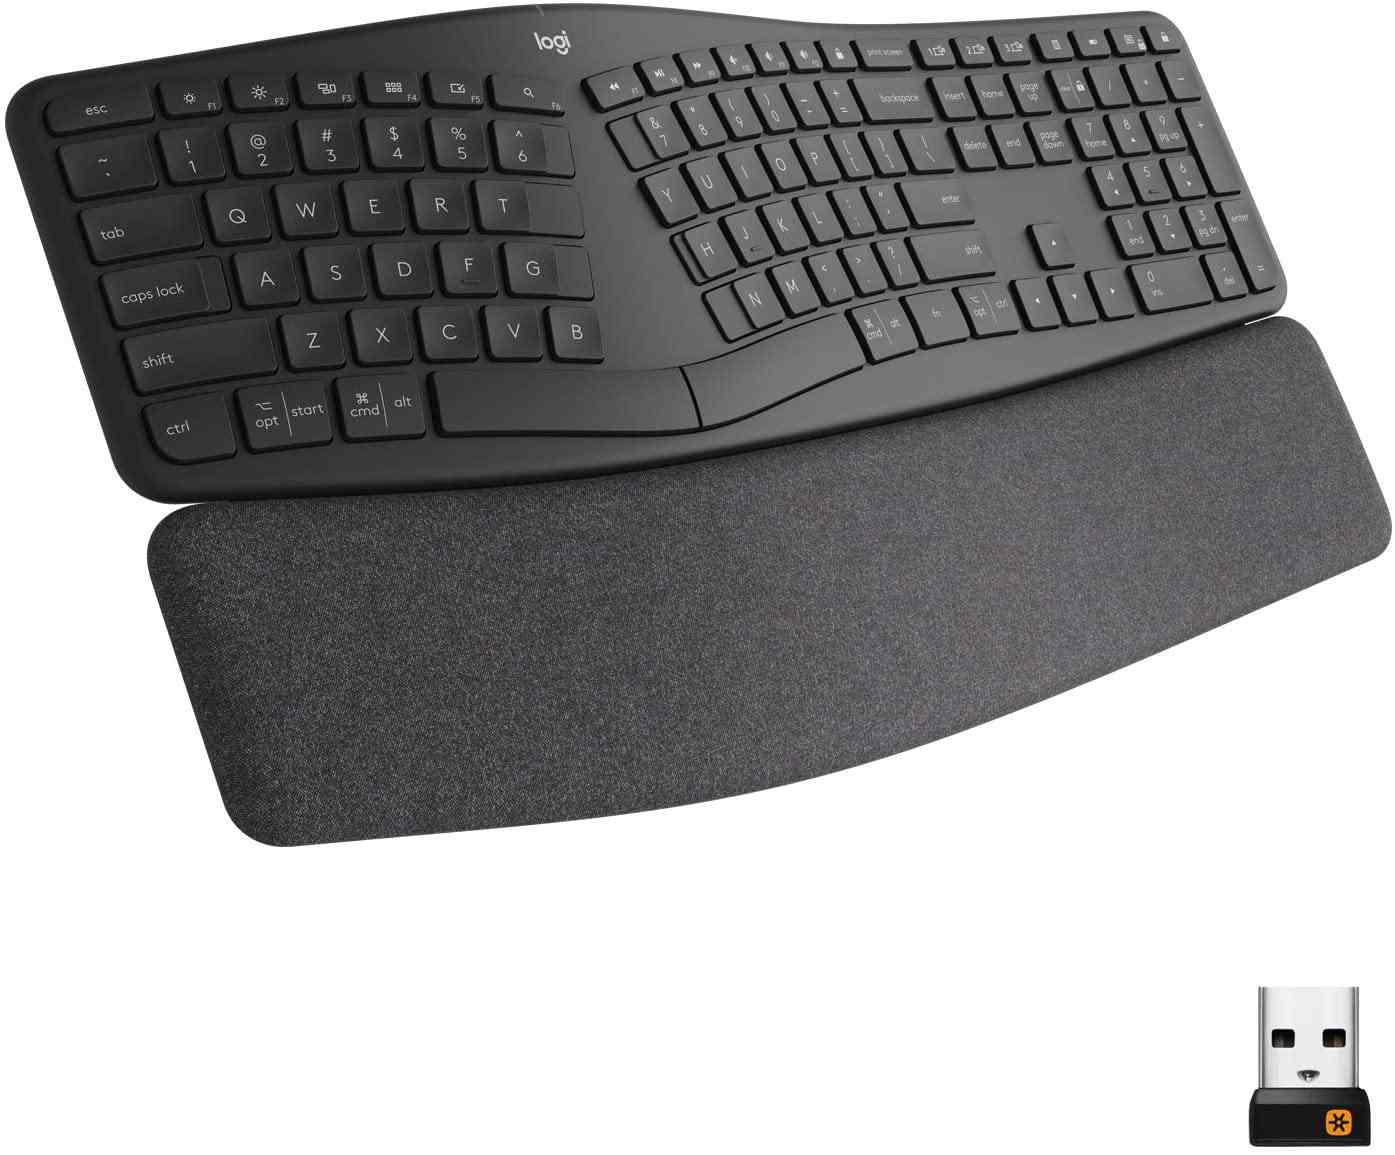 Logitech - best ergonomic keyboard for Mac